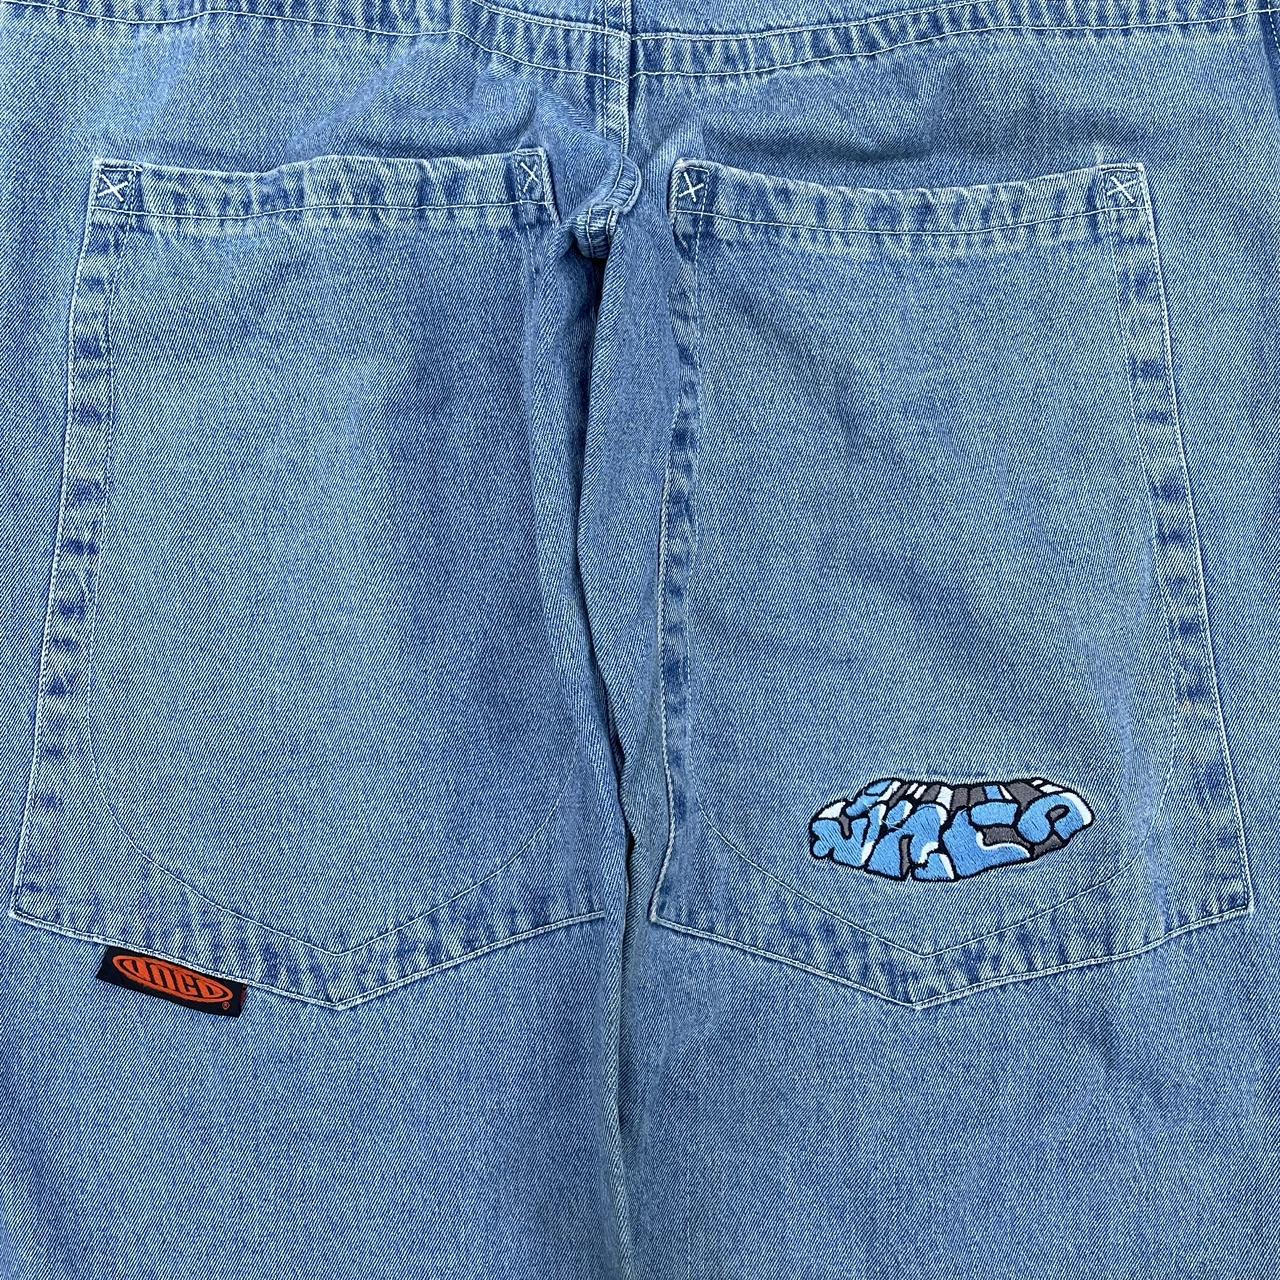 Vintage 90s jnco jeans Jnco extra big wide load... - Depop